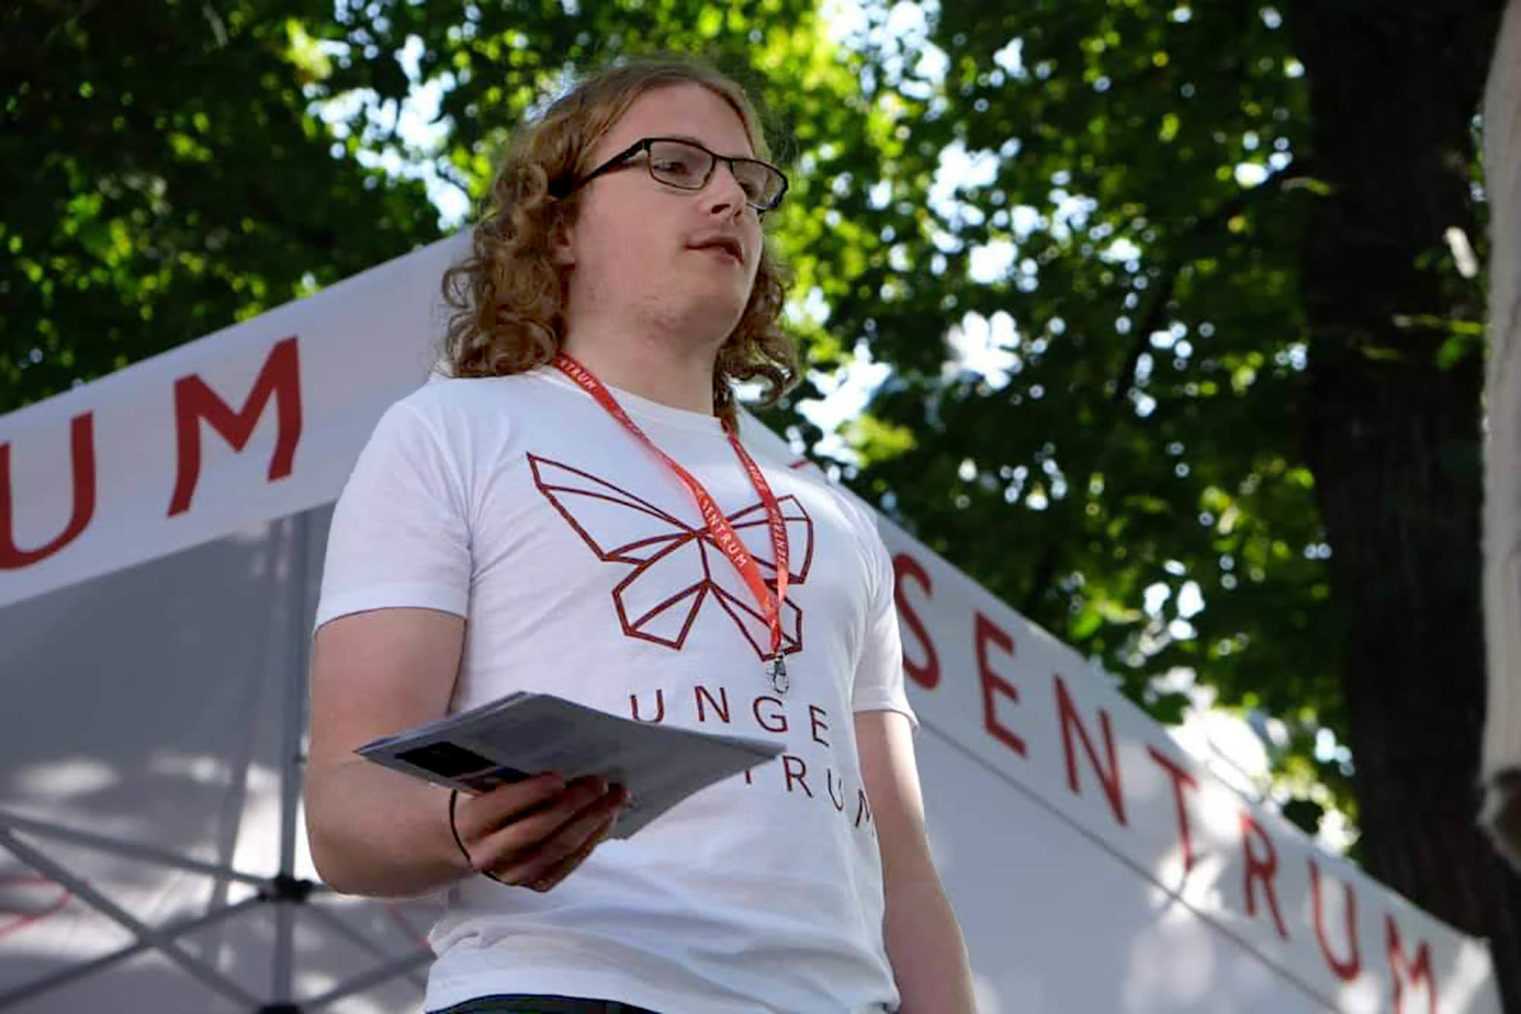 Bilde av Simen Bondevik som står på en stand for partiet Sentrum og deler ut løpesedler. Han har på seg en T-skjorte med Sentrums logo.